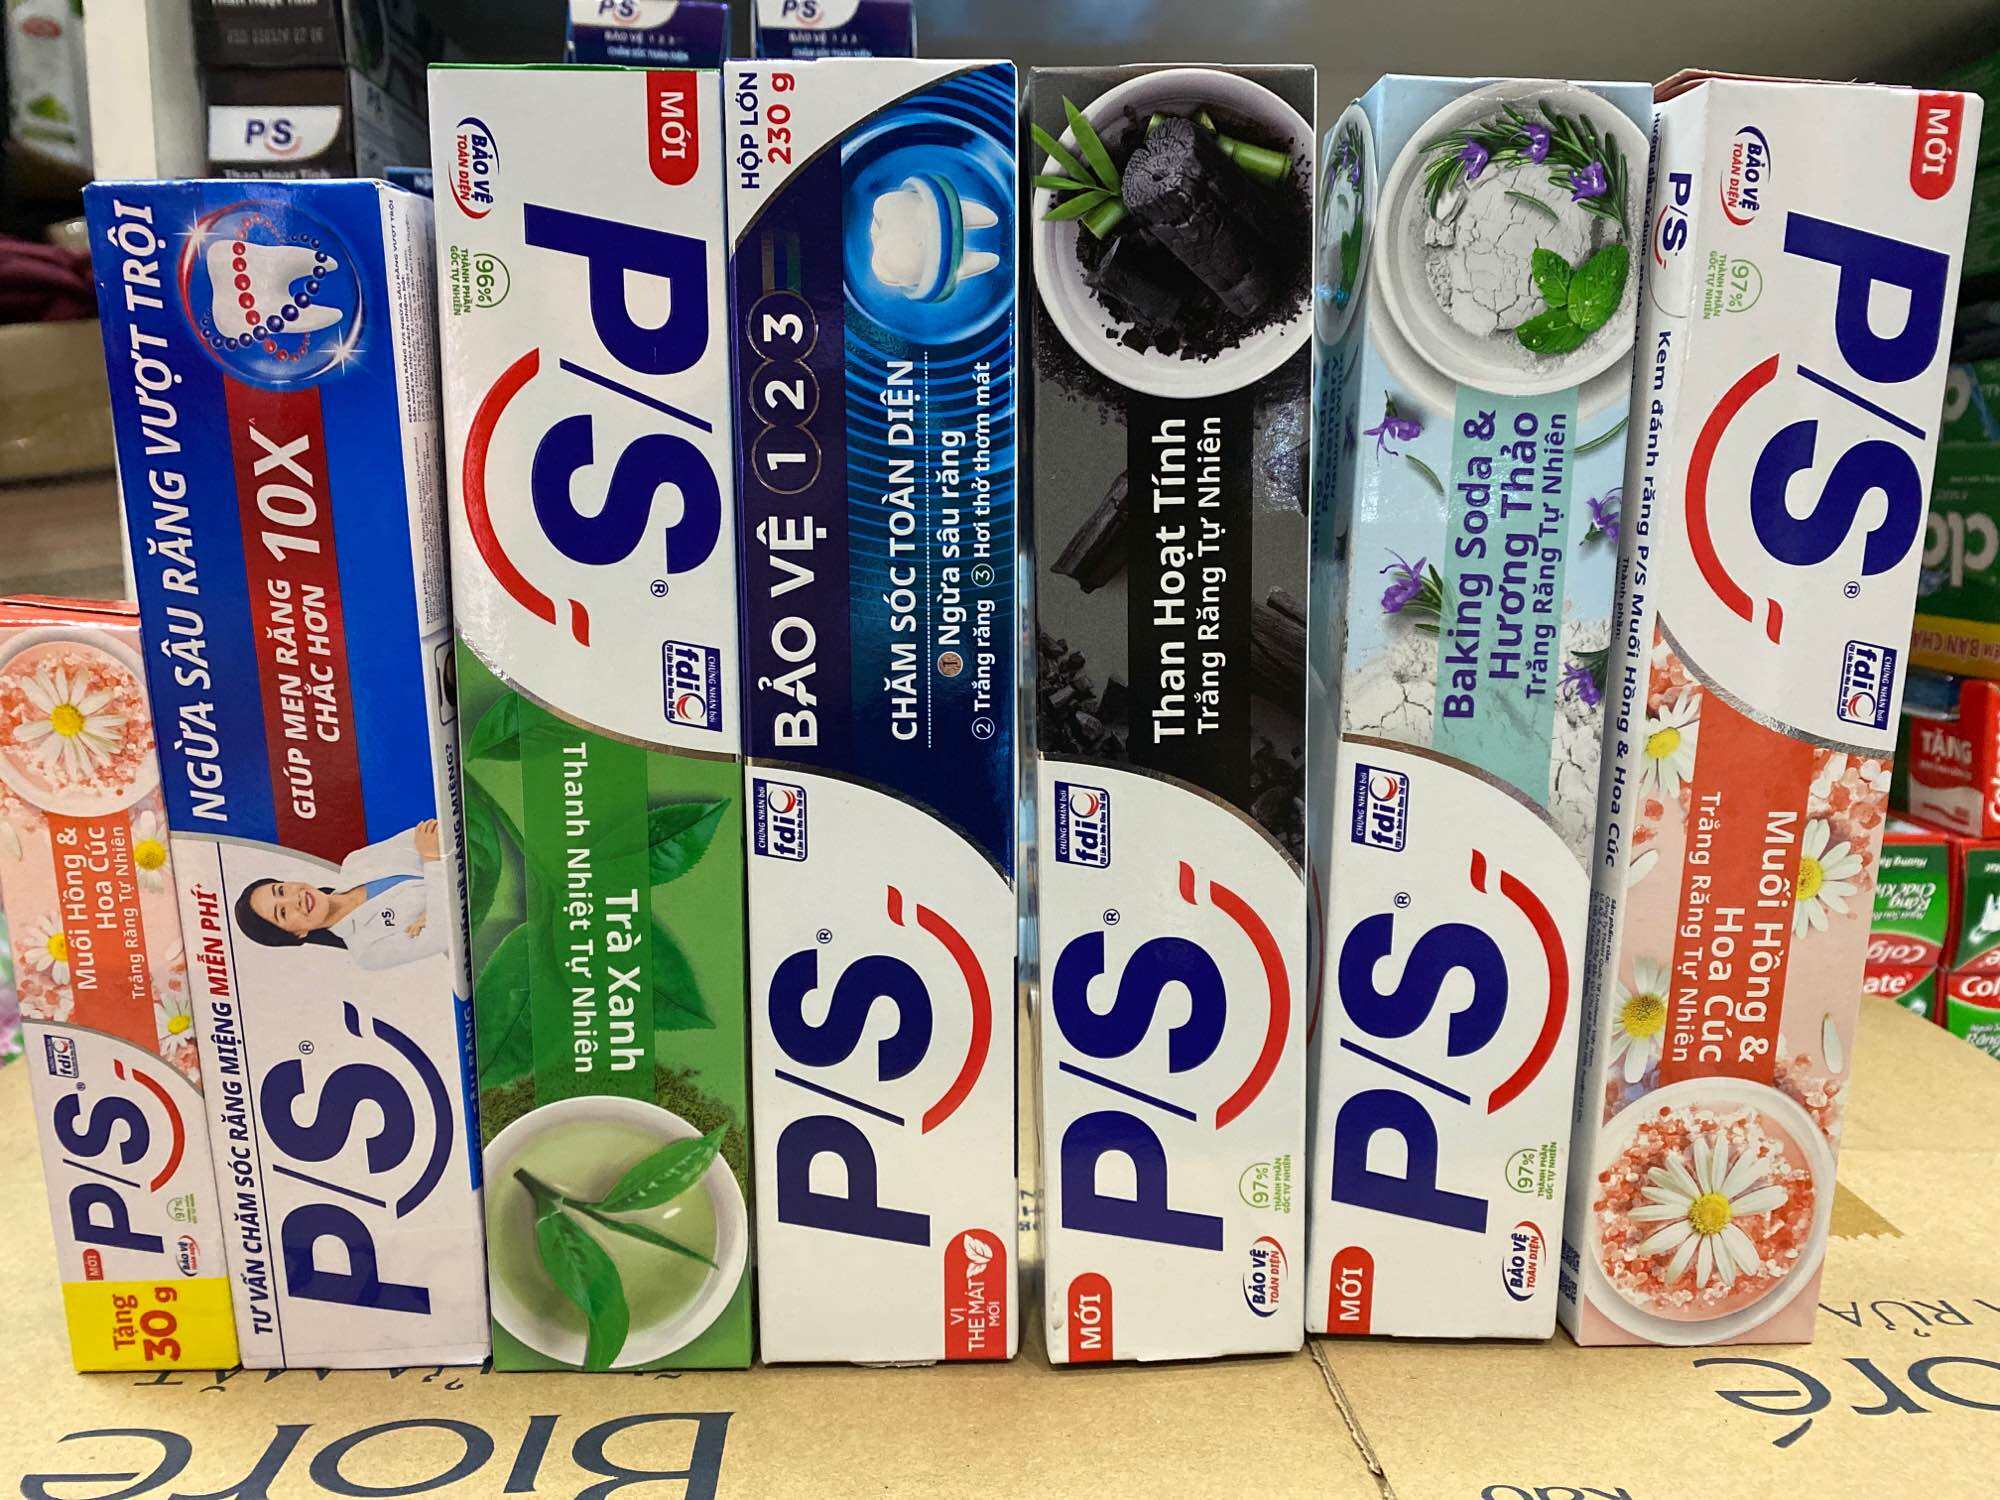 Kem đánh răng P S than hoạt tính, soda, nha đam, trà xanh, bảo vệ 123